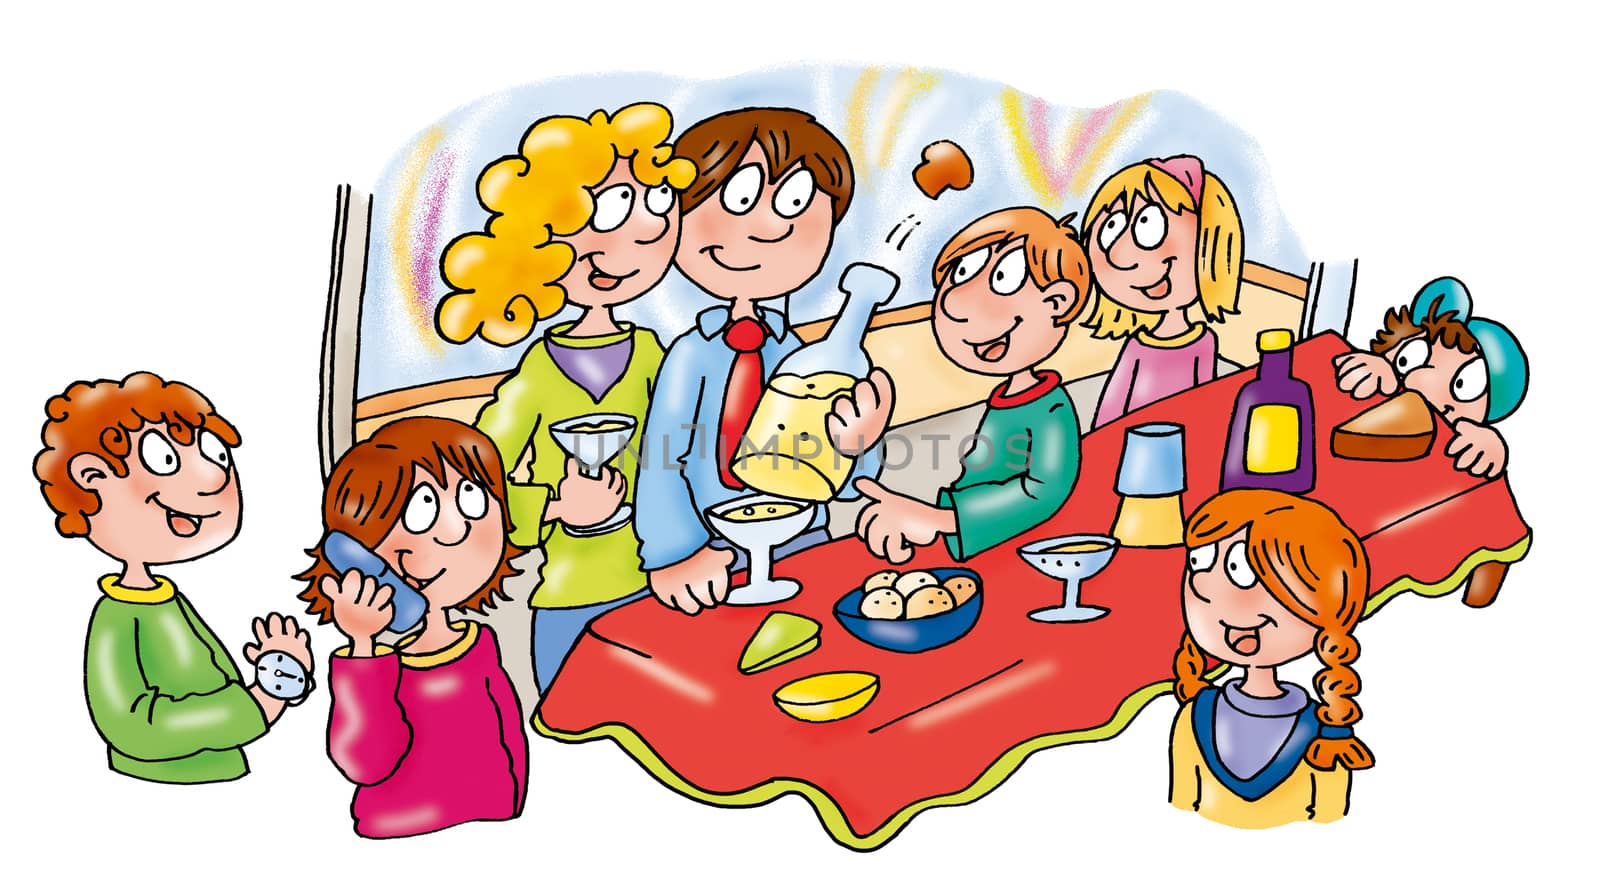 capodanno grande festa con amici
si mangia beve e festeggia,buon anno!